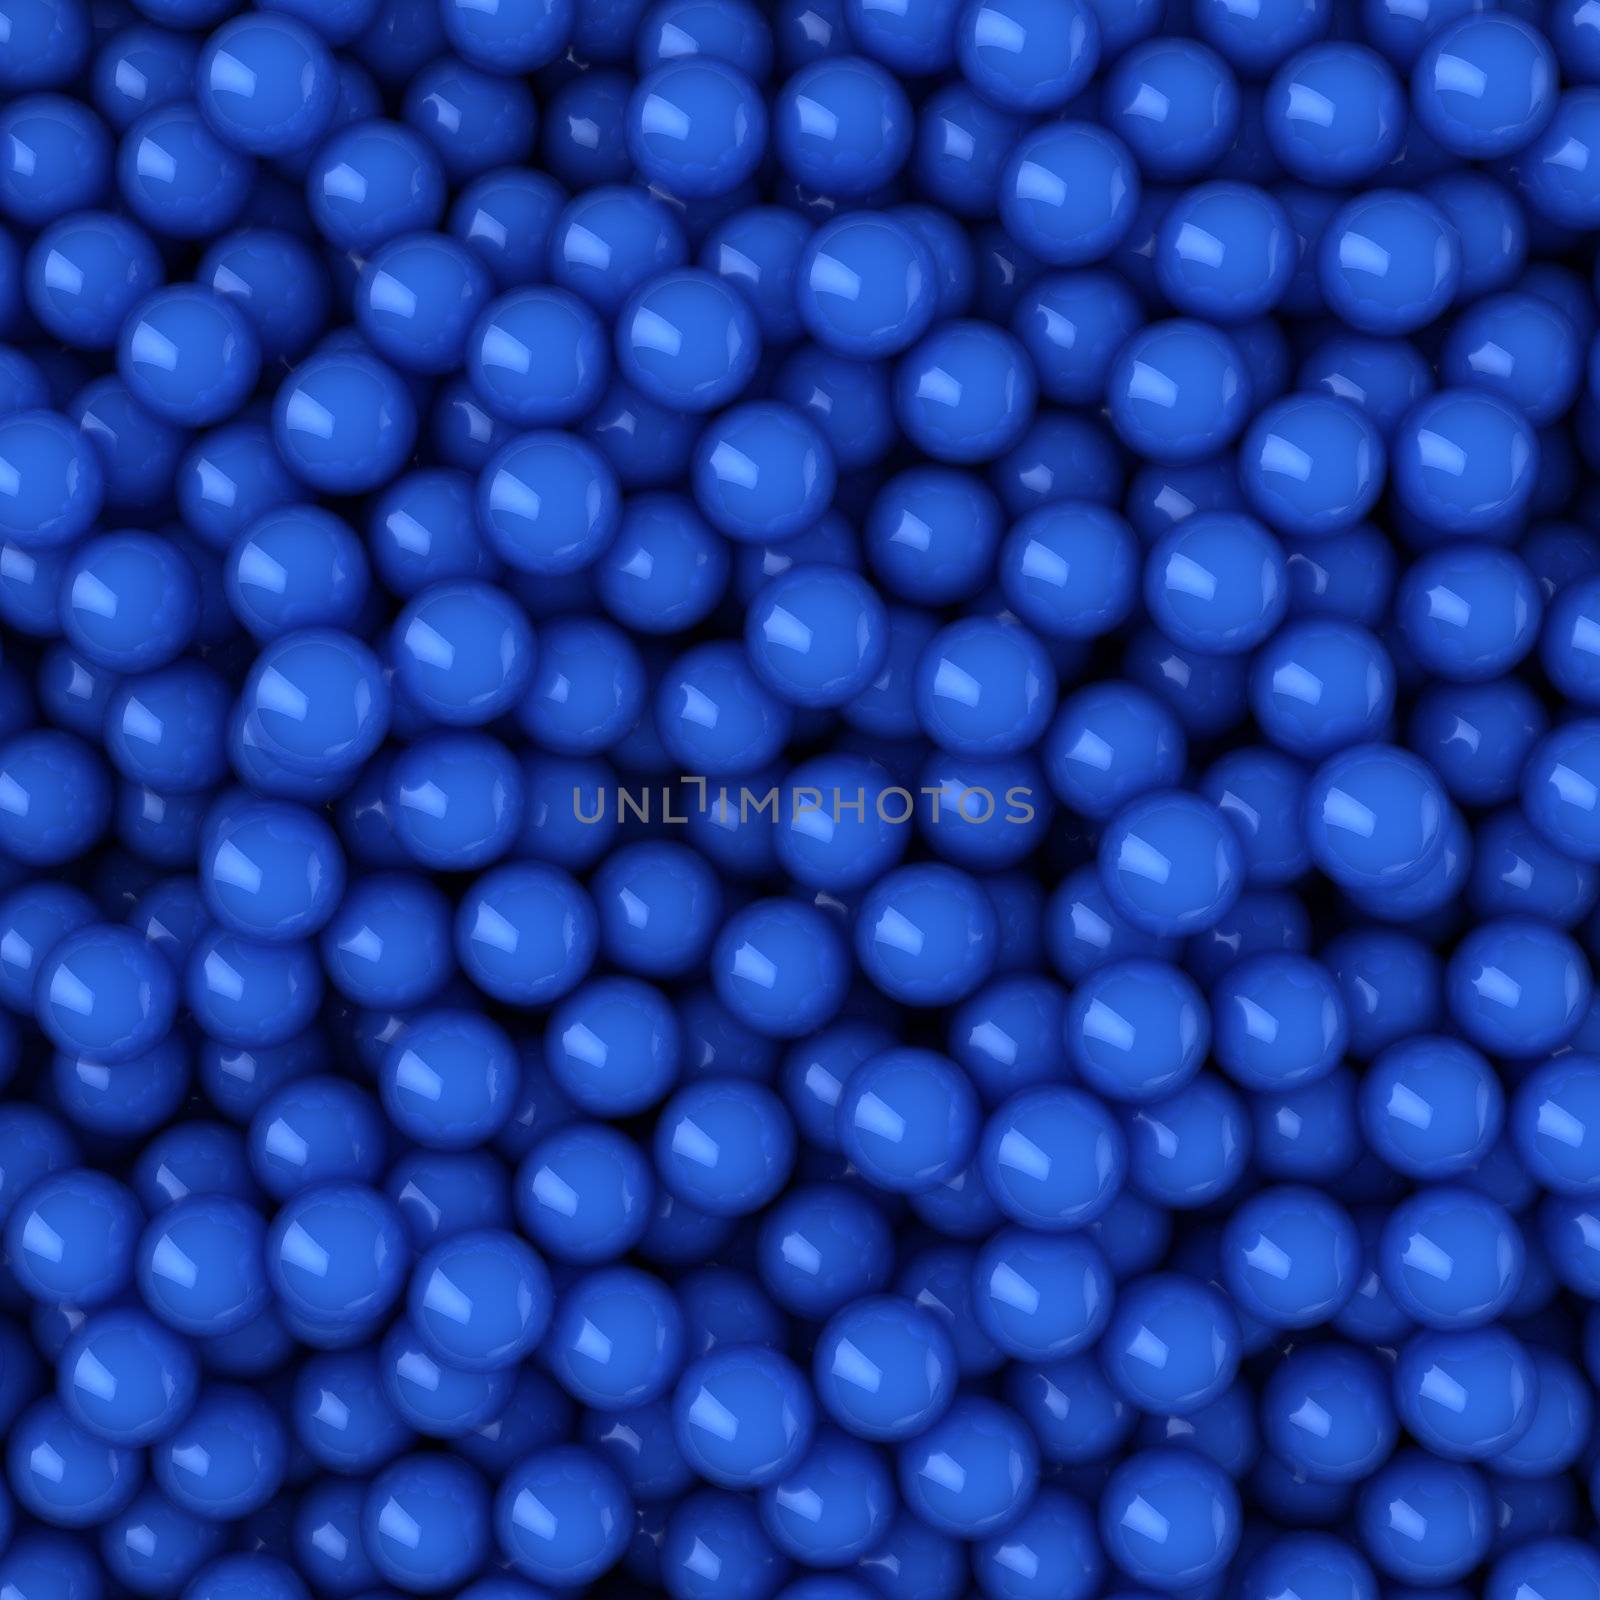 Heap of blue balls, 3d computer graphic